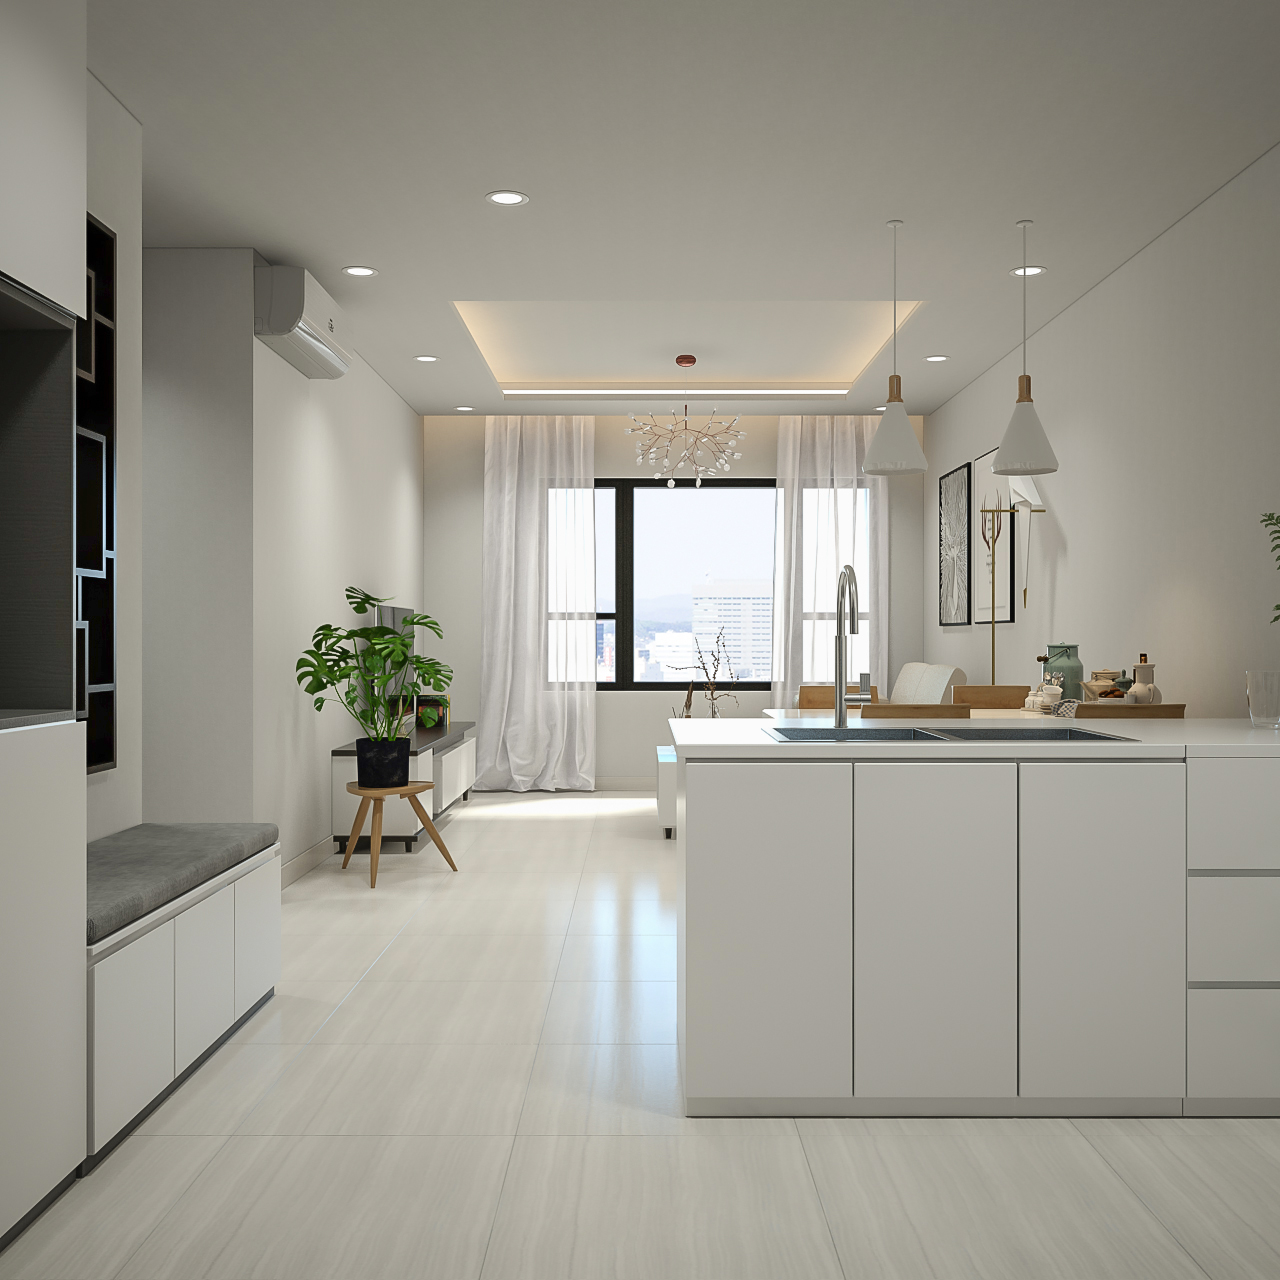 Phòng bếp, phong cách Tối giản Minimalist, thiết kế concept nội thất, căn hộ The Tresor